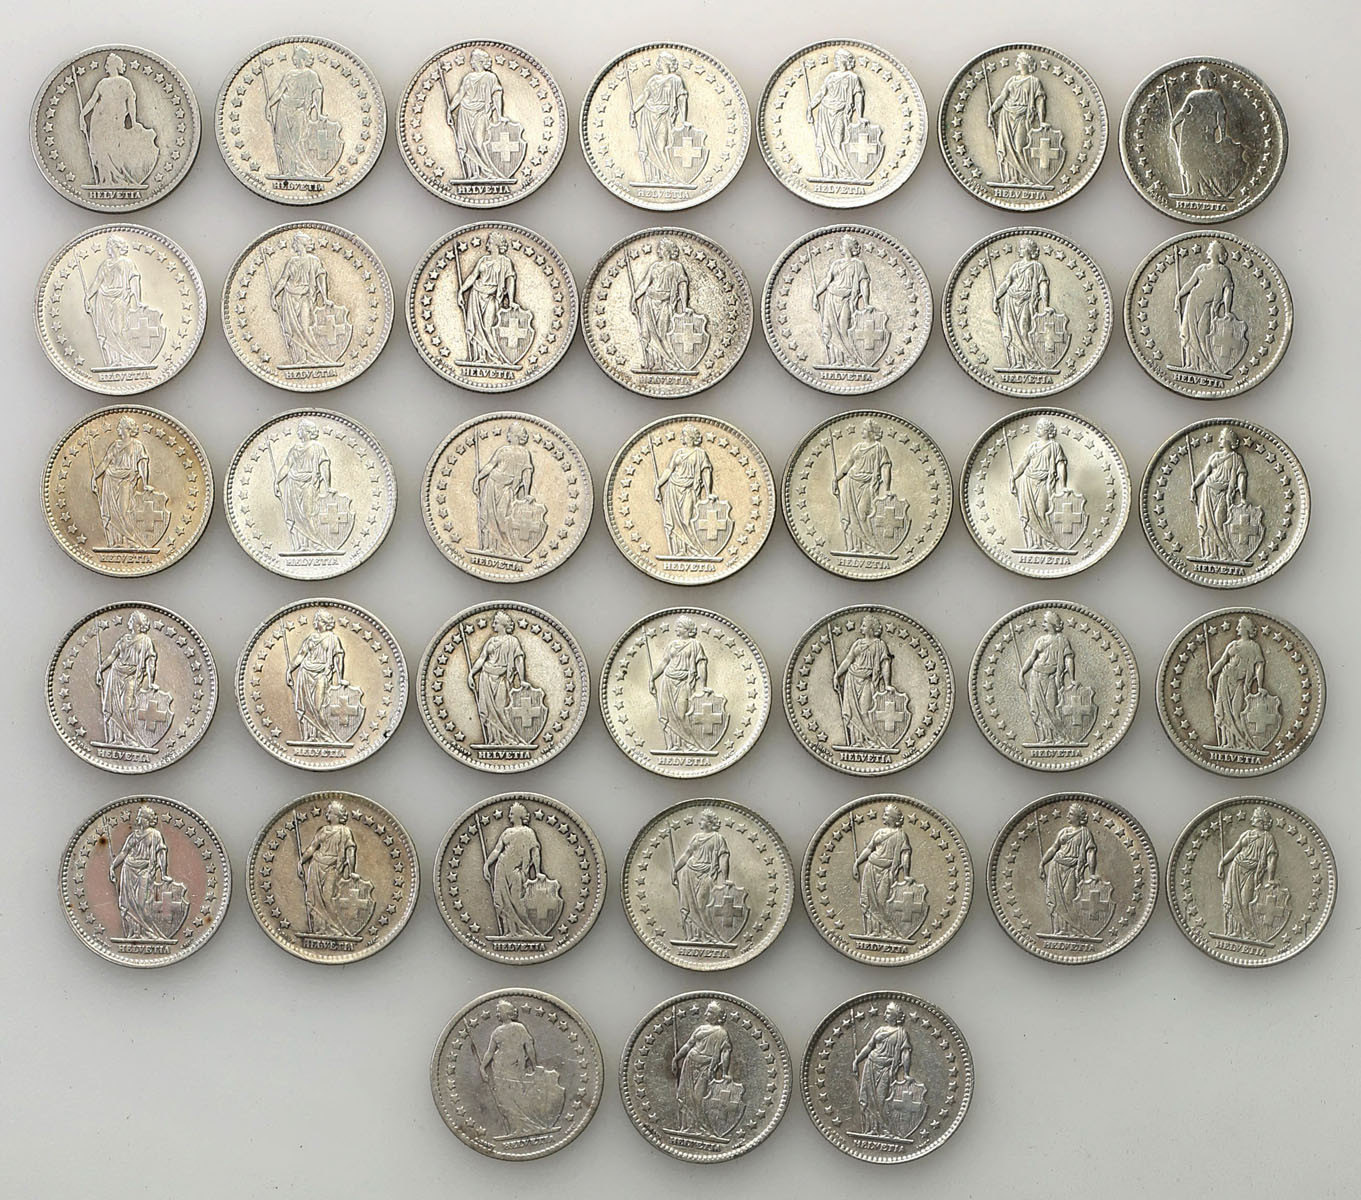 Szwajcaria. Frank. 1876-1967, zestaw 38 monet